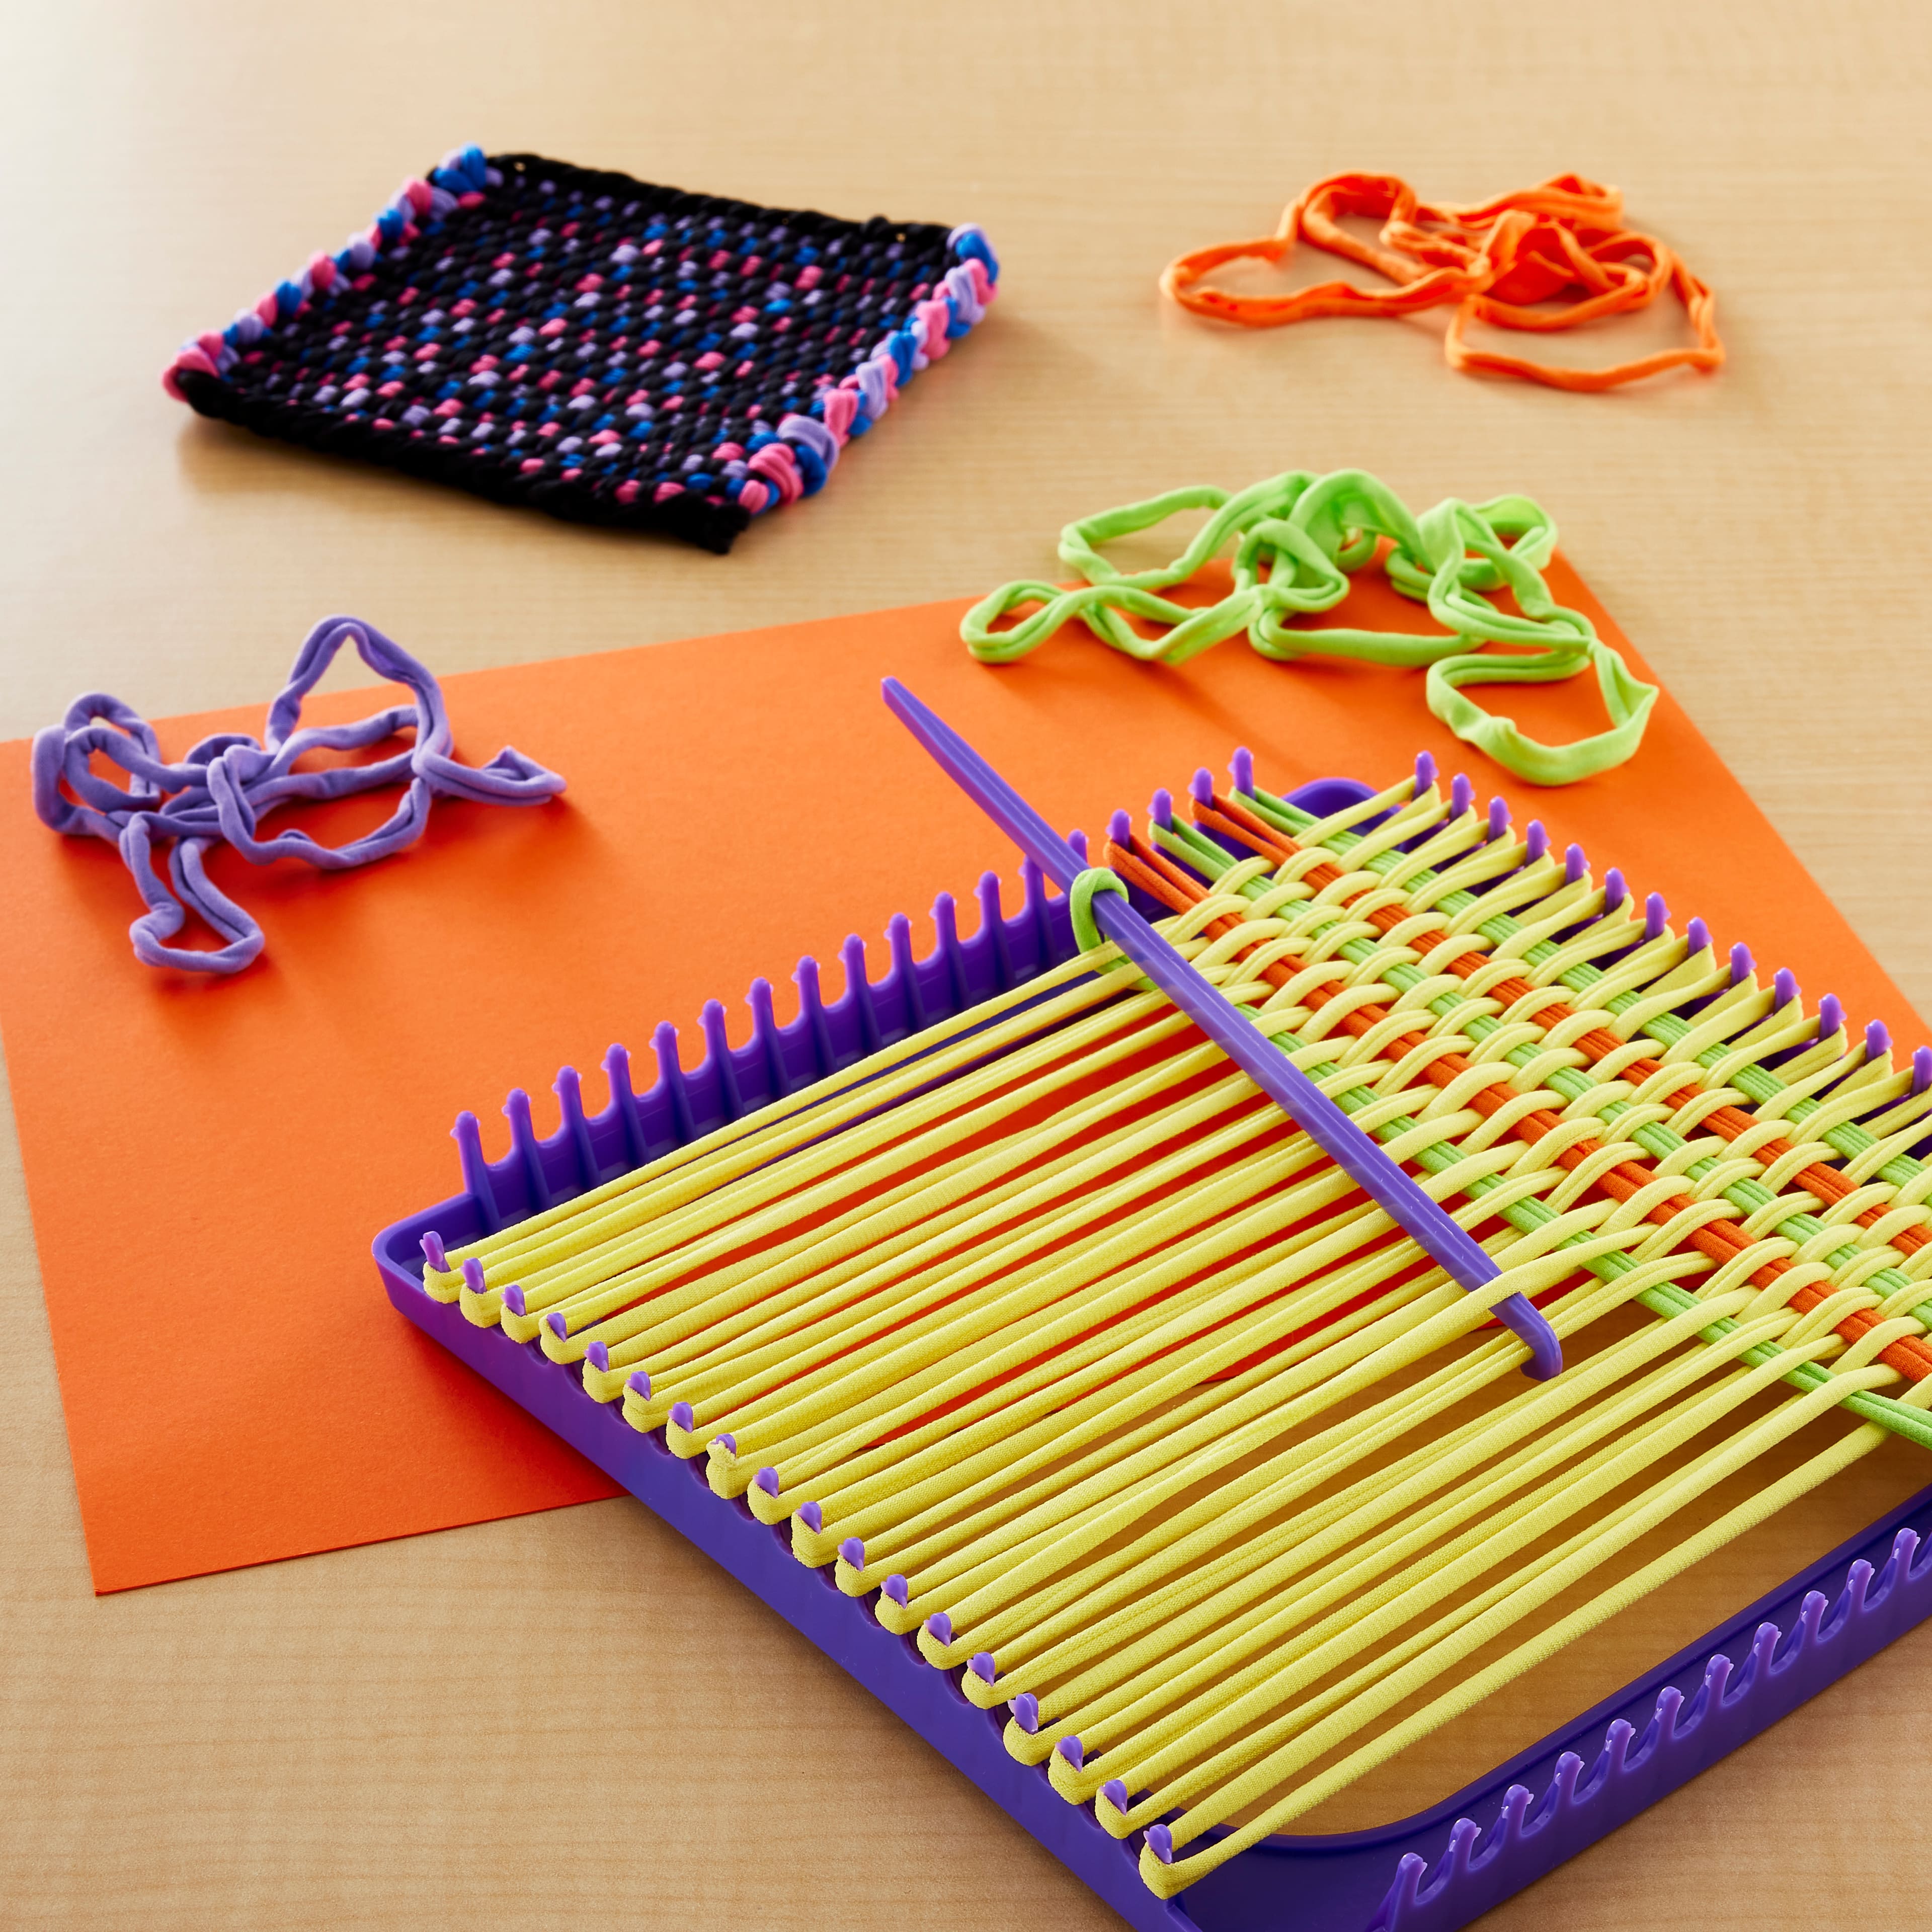 12 Pack: Color Zone&#xAE; Weaving Loom Kit